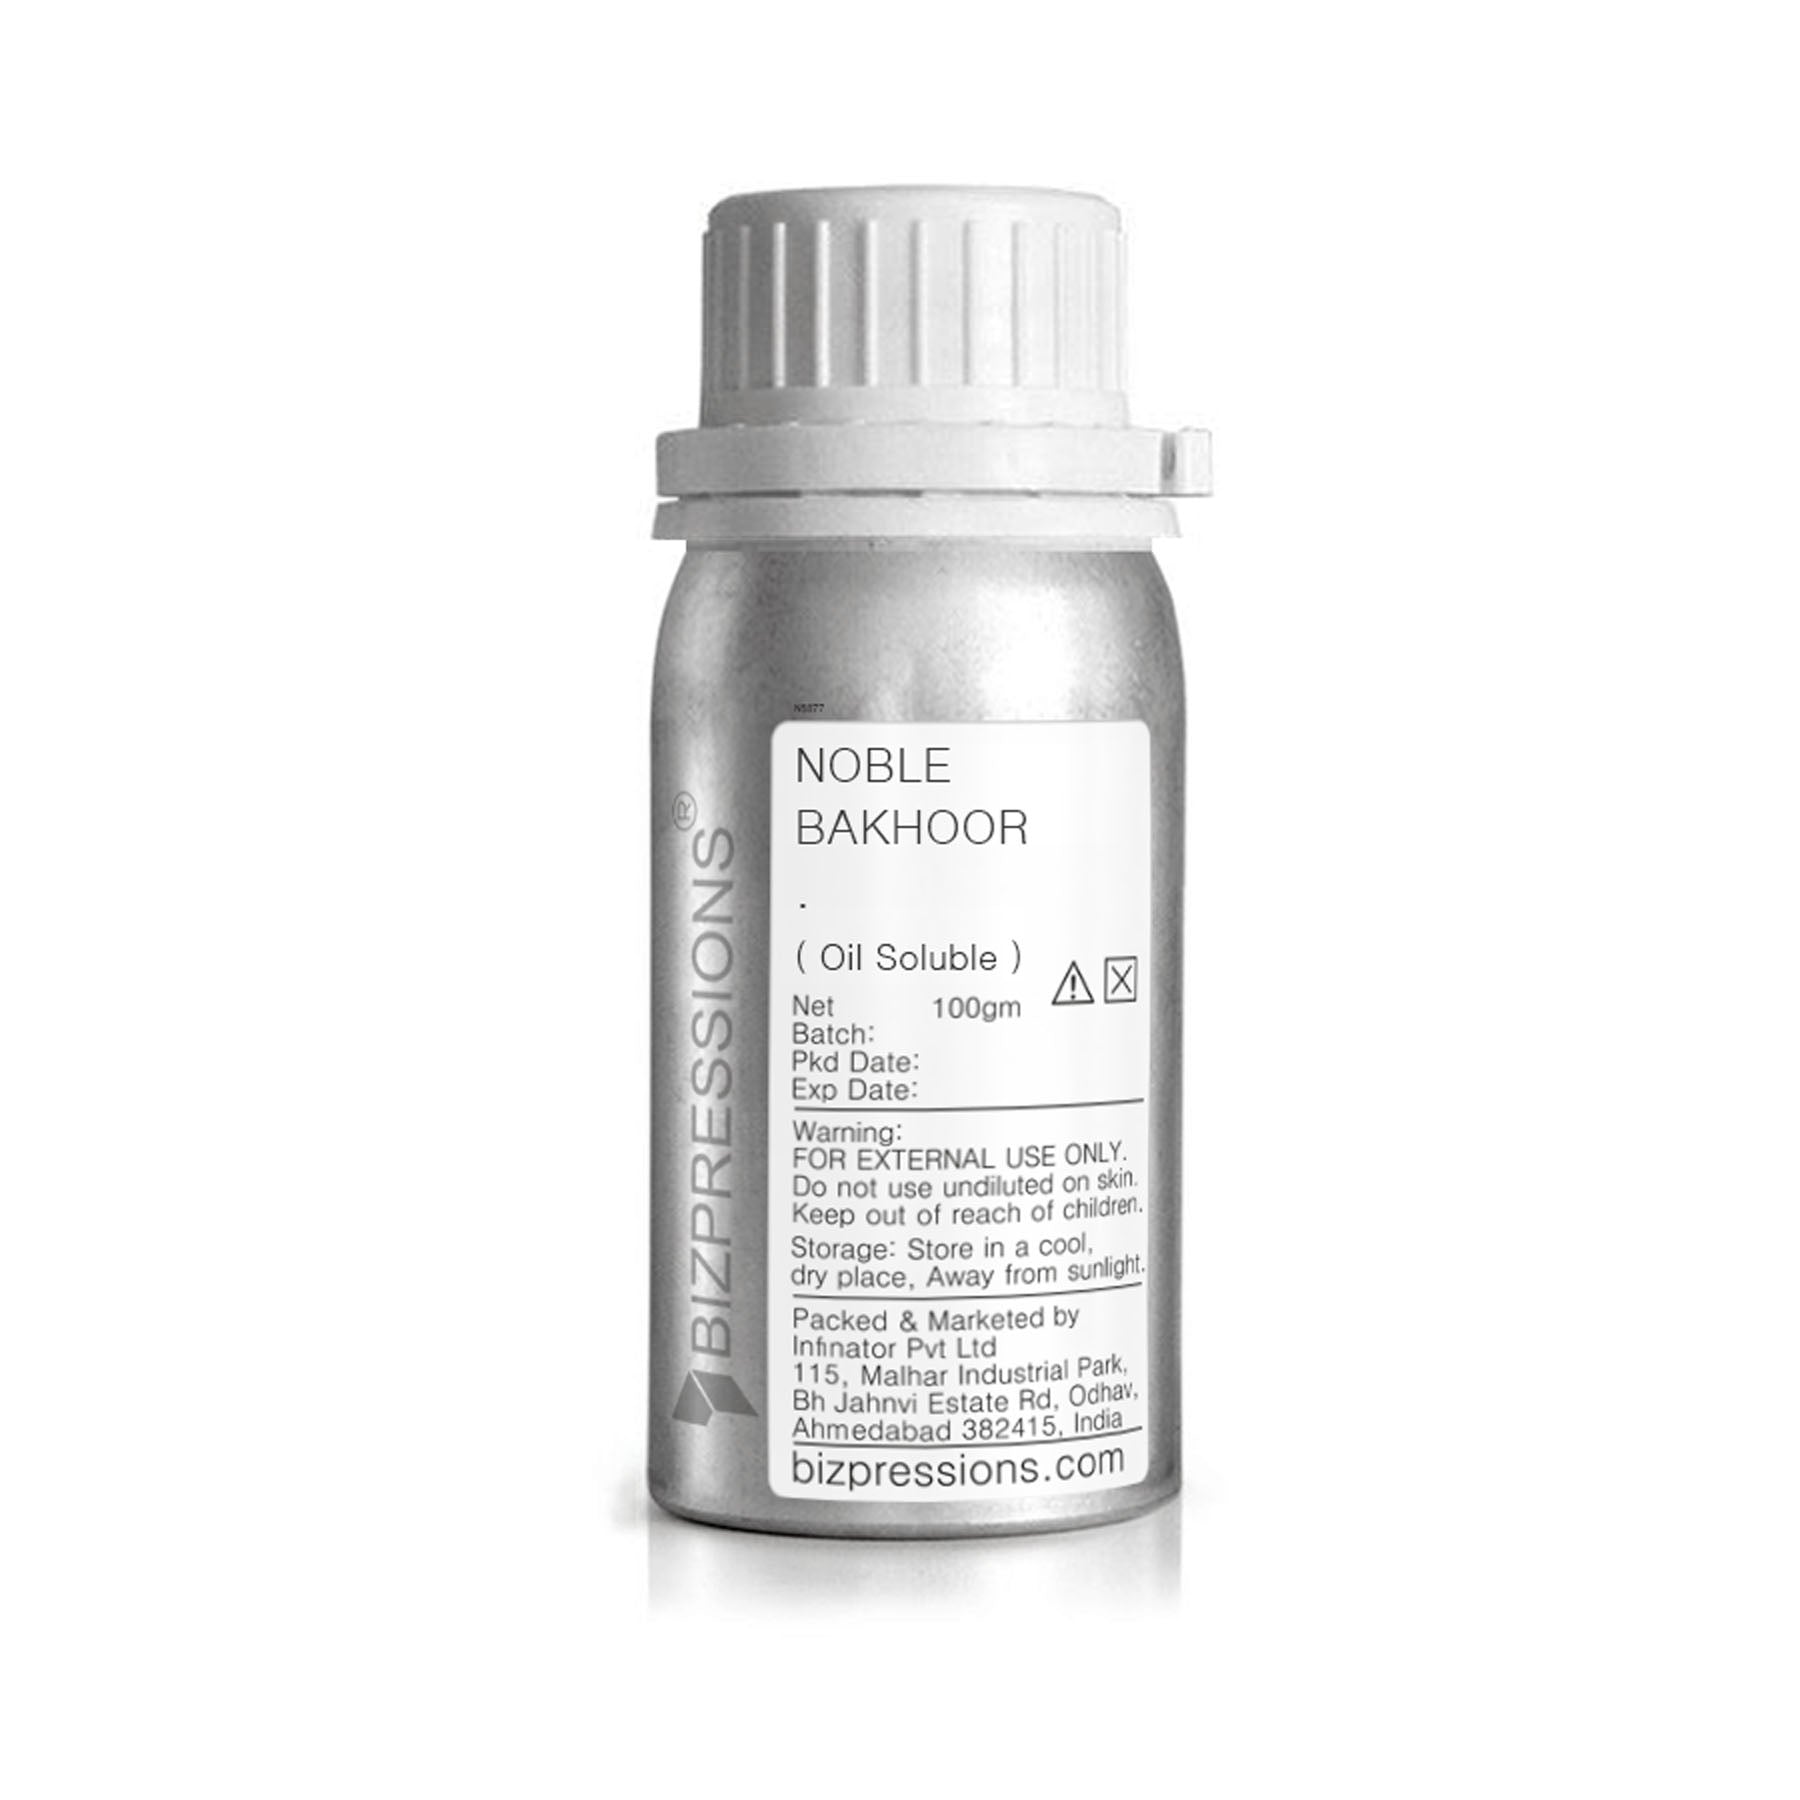 NOBLE BAKHOOR - Fragrance ( Oil Soluble ) - 100 gm